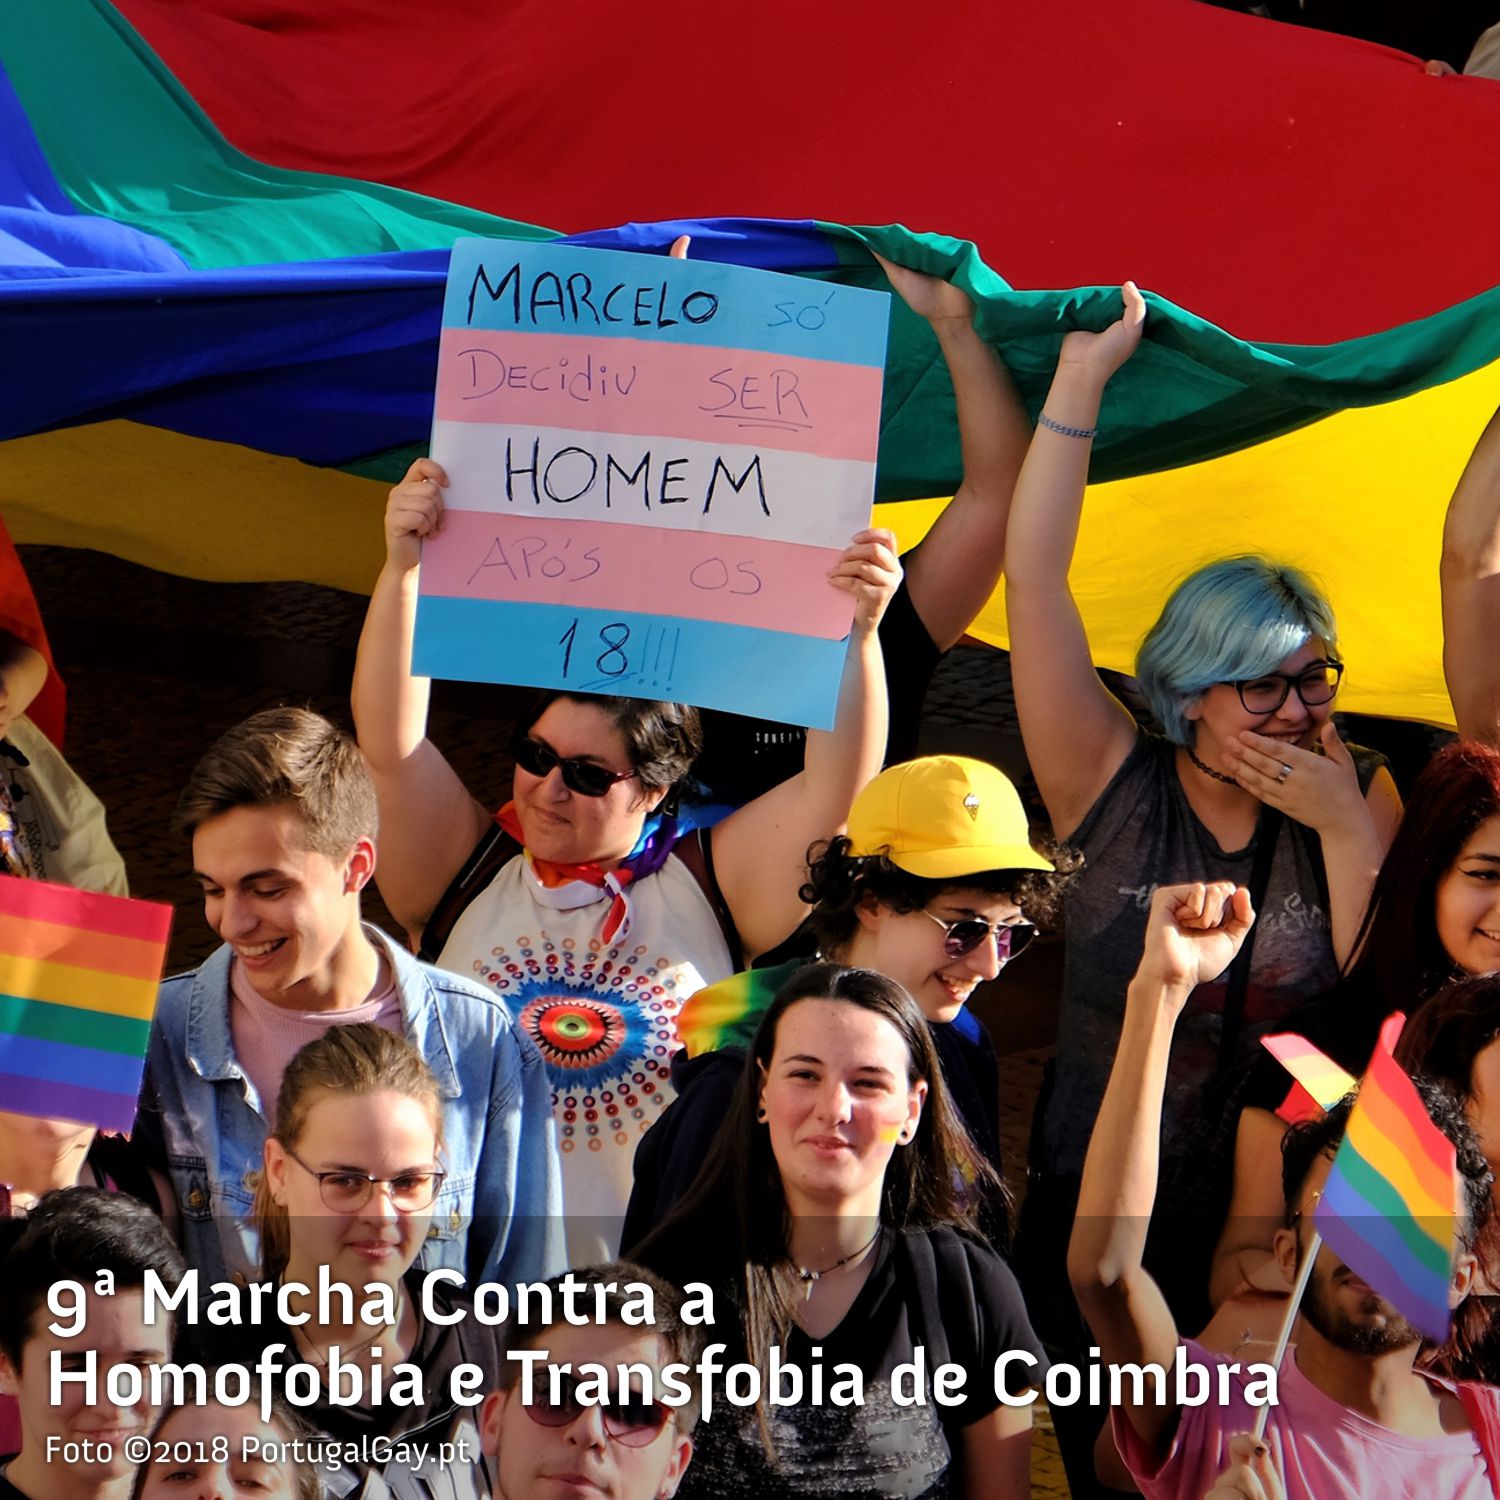 PORTUGAL: Marcha Contra a Homofobia e Transfobia de Coimbra